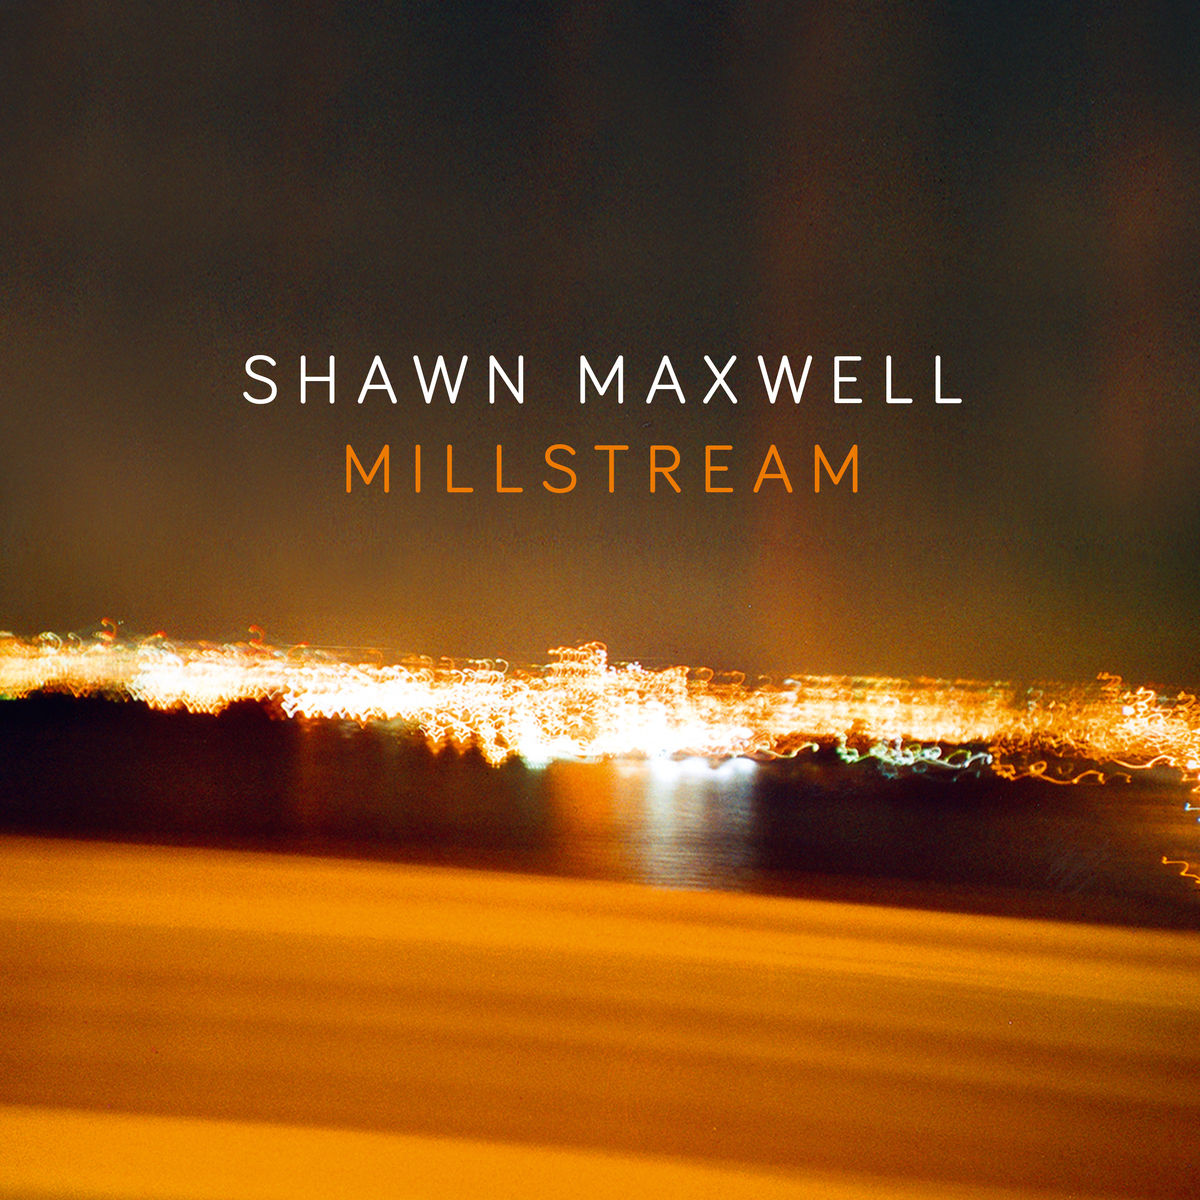 Shawn Maxwell - Millstream (2020) [FLAC 24bit/96kHz]